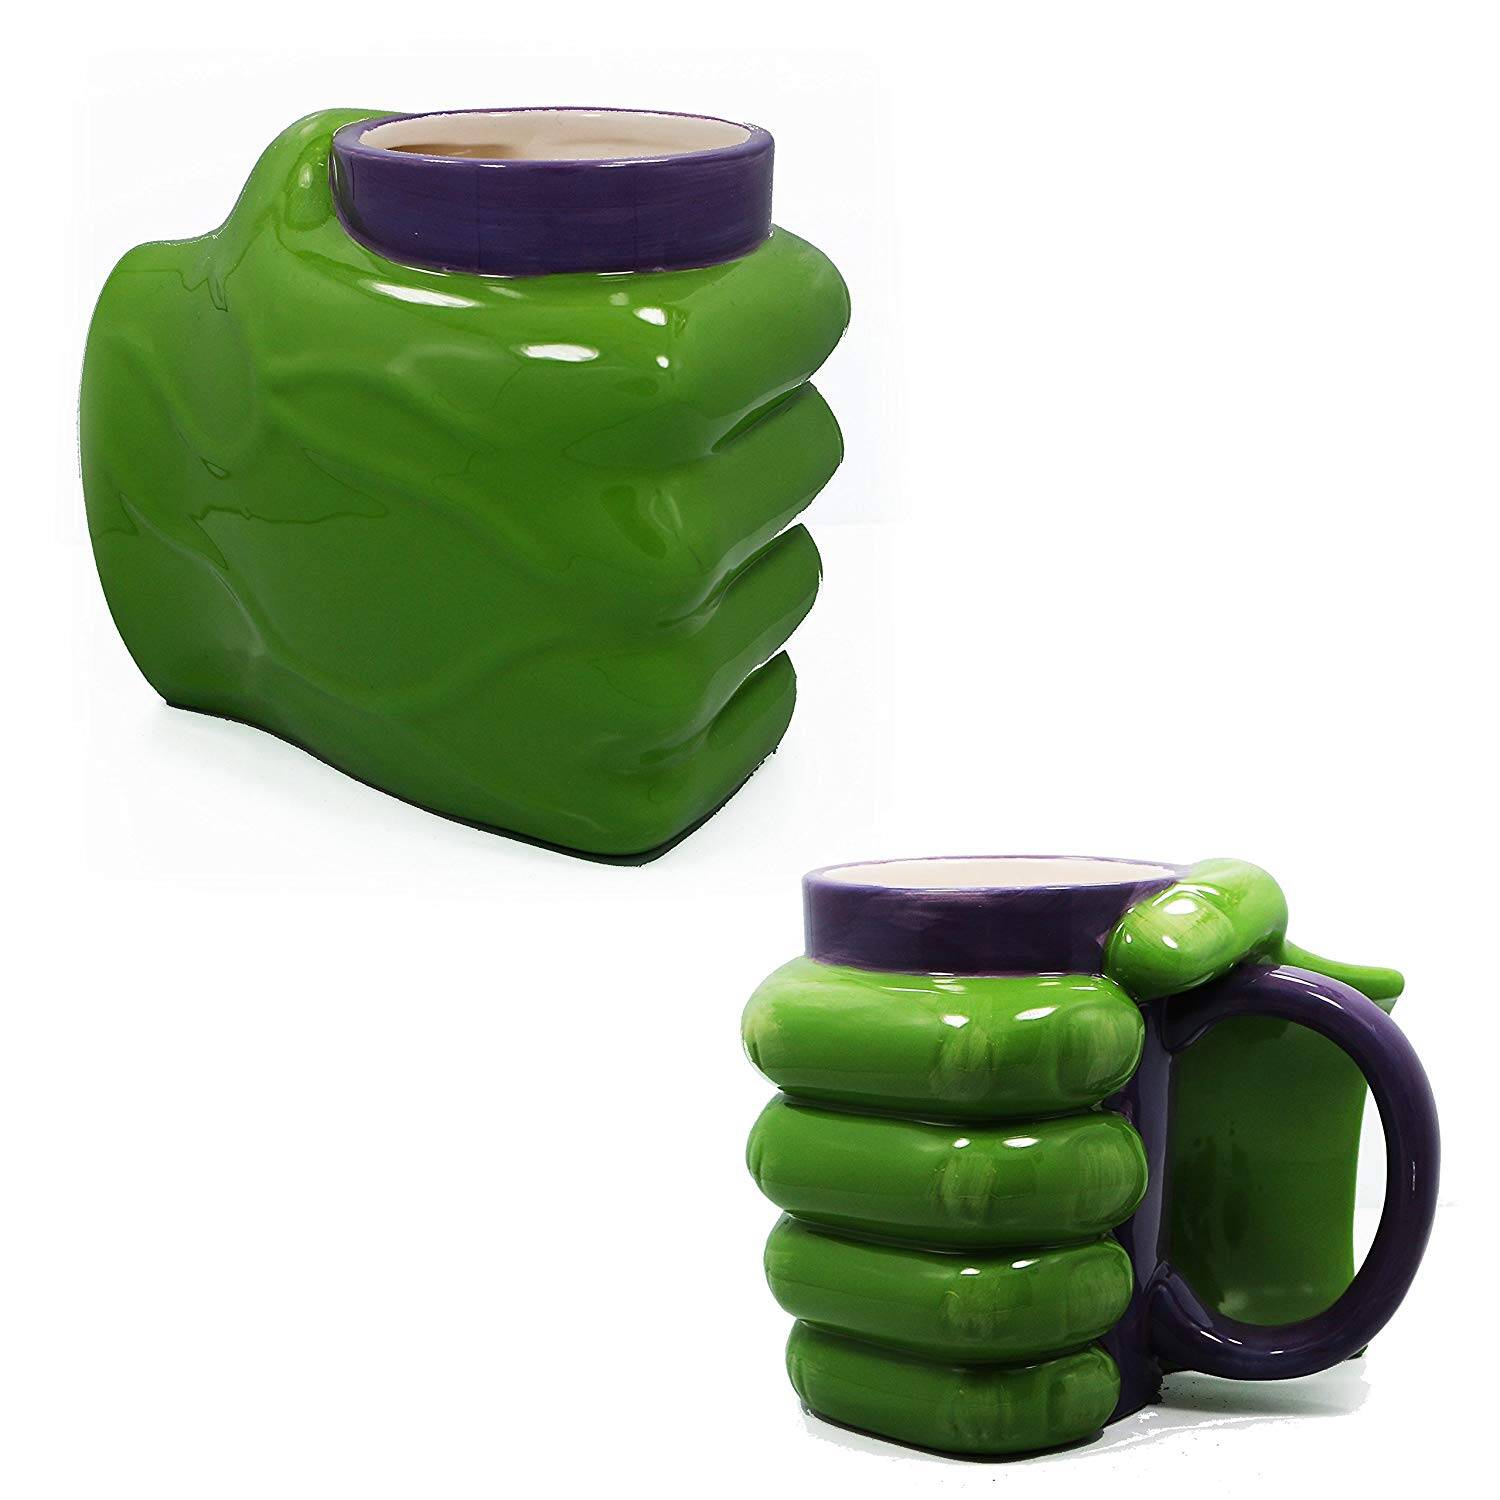 Incredible Hulk Jumbo Hand Mug